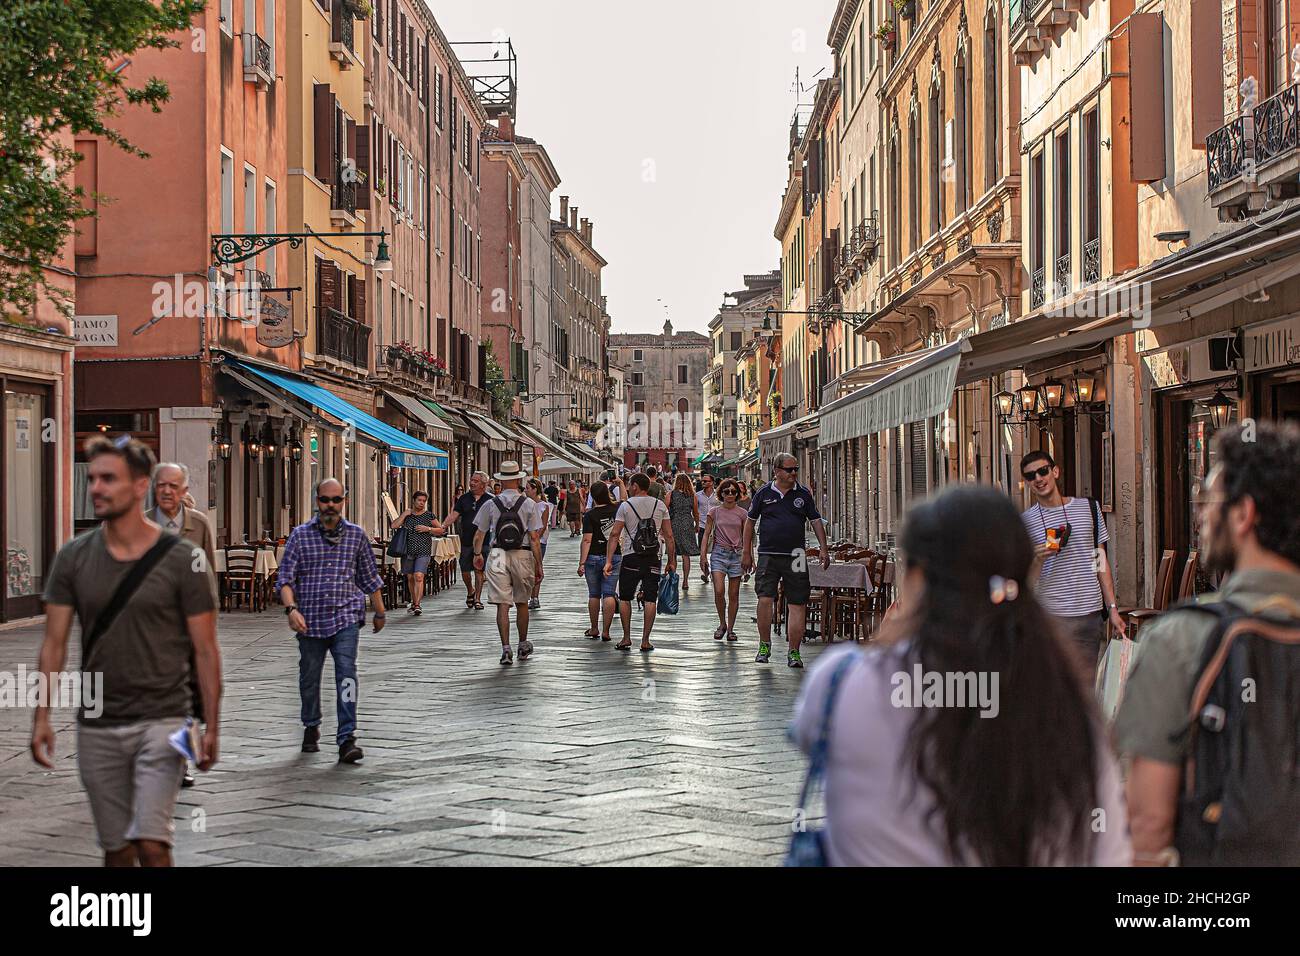 VENISE, ITALIE 2 JUILLET 2020: Les touristes marchent dans la rue de Venise Banque D'Images